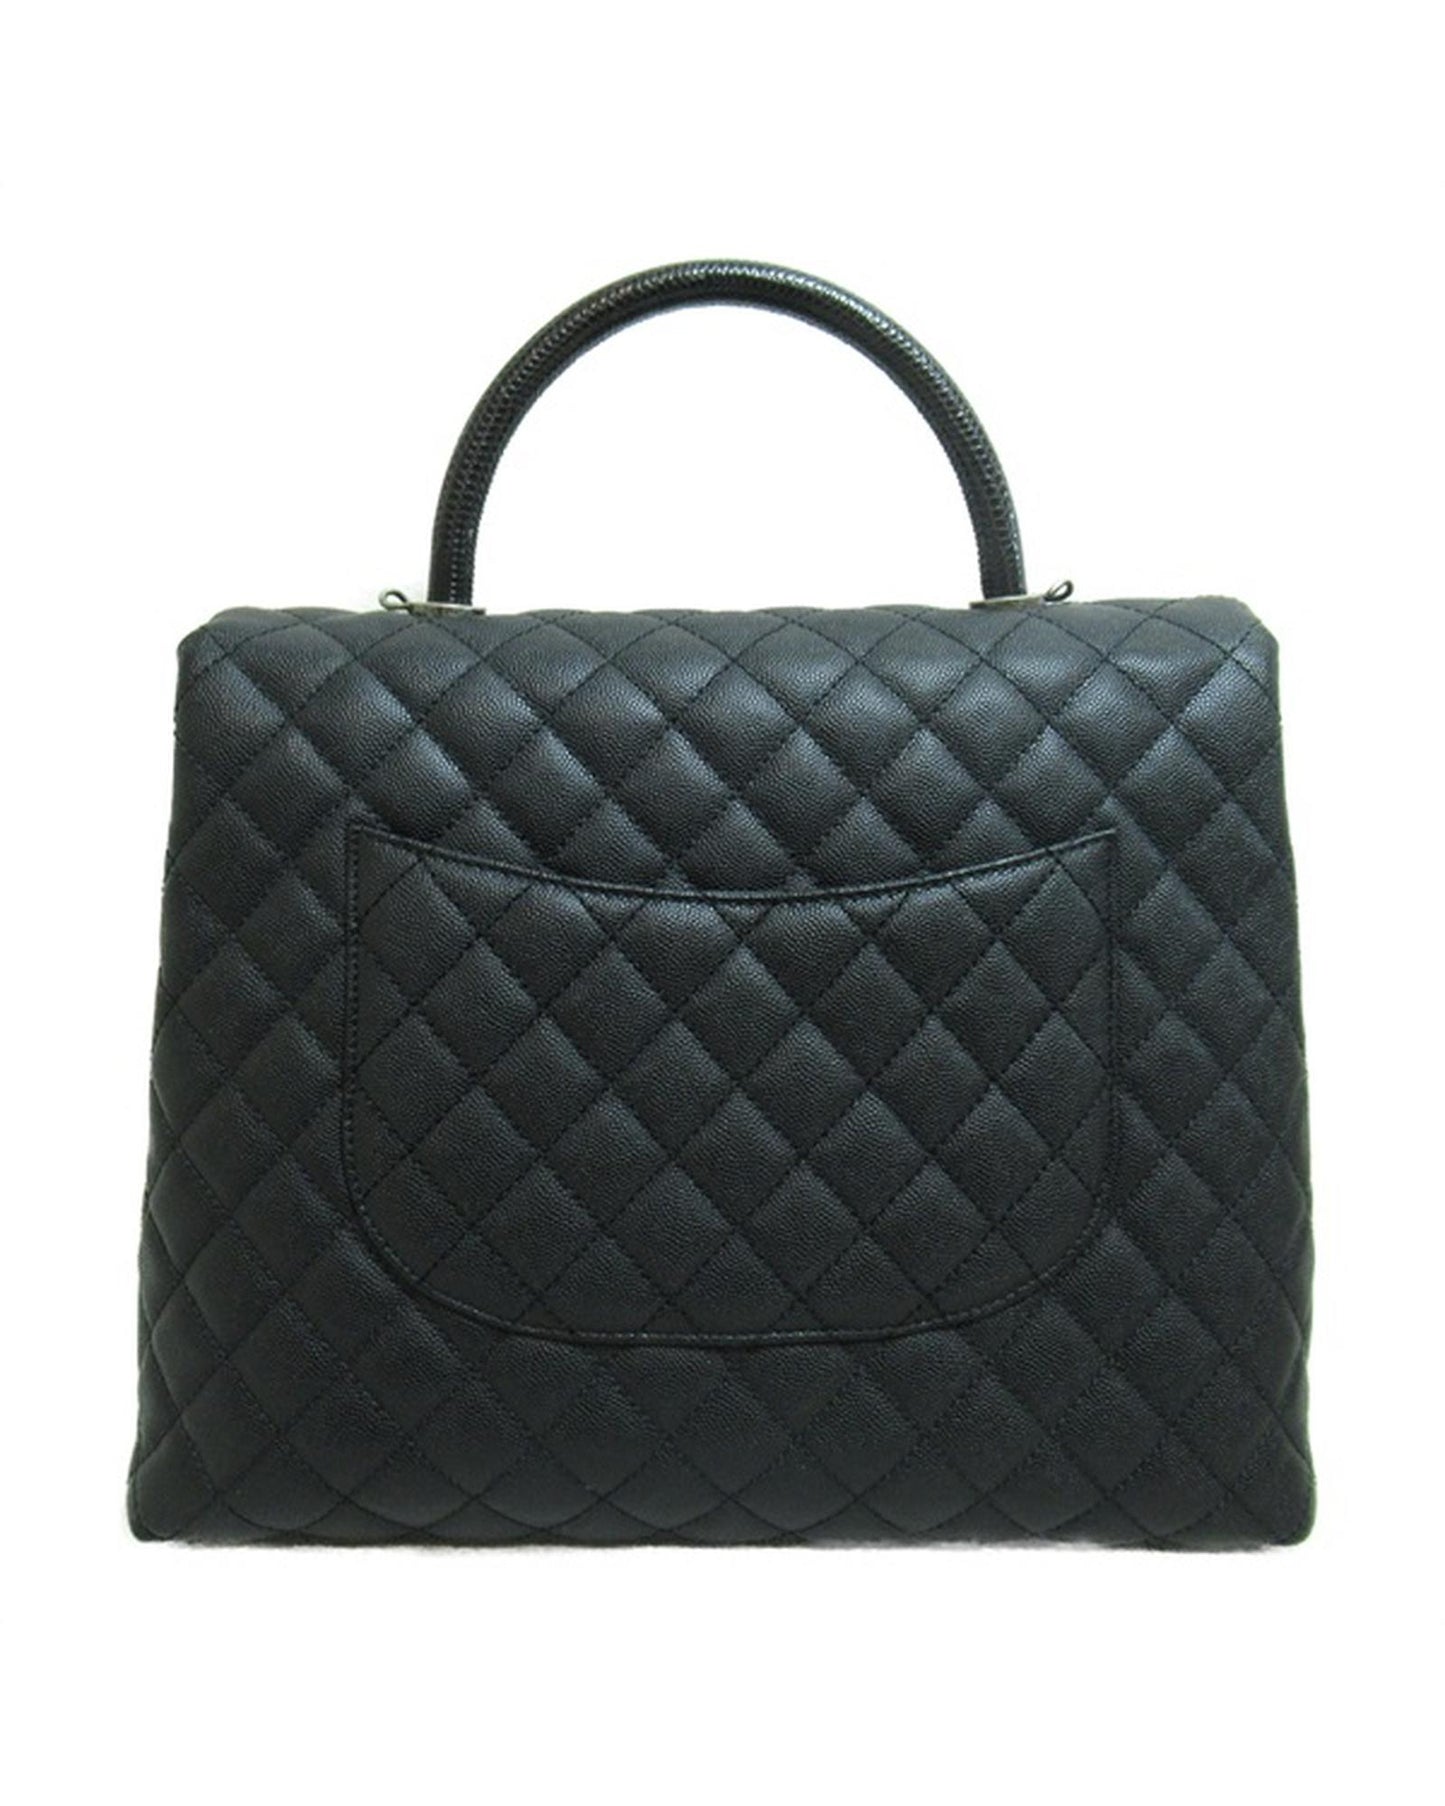 Chanel Women's Black Top Handle Handbag with CC Logo in Black